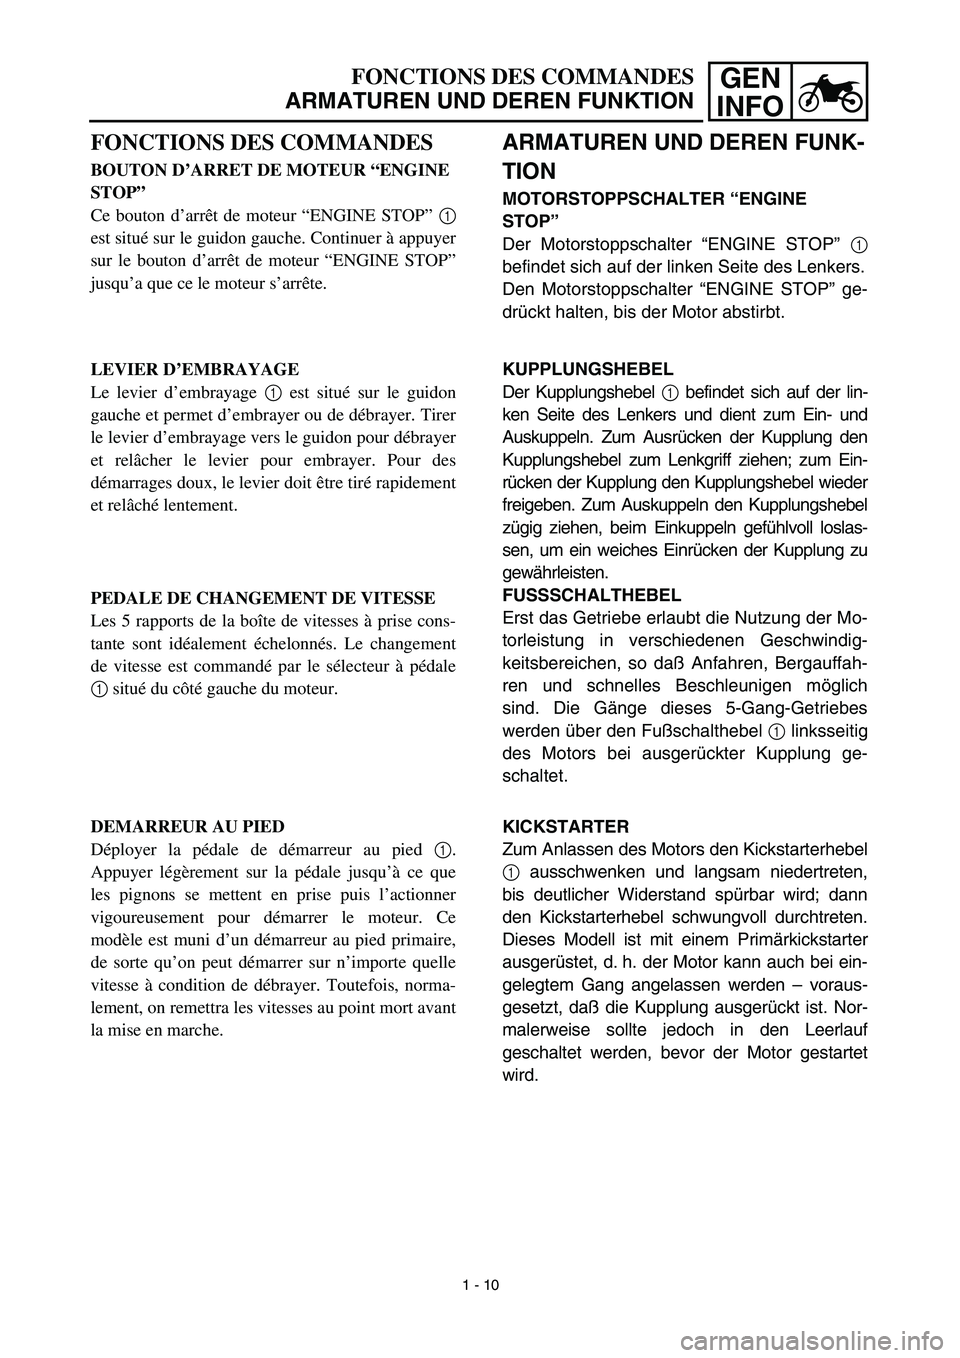 YAMAHA YZ426F 2002  Notices Demploi (in French) GEN
INFOFONCTIONS DES COMMANDES
ARMATUREN UND DEREN FUNKTION
ARMATUREN UND DEREN FUNK-
TION
MOTORSTOPPSCHALTER “ENGINE 
STOP”
Der Motorstoppschalter “ENGINE STOP” 1
befindet sich auf der linke